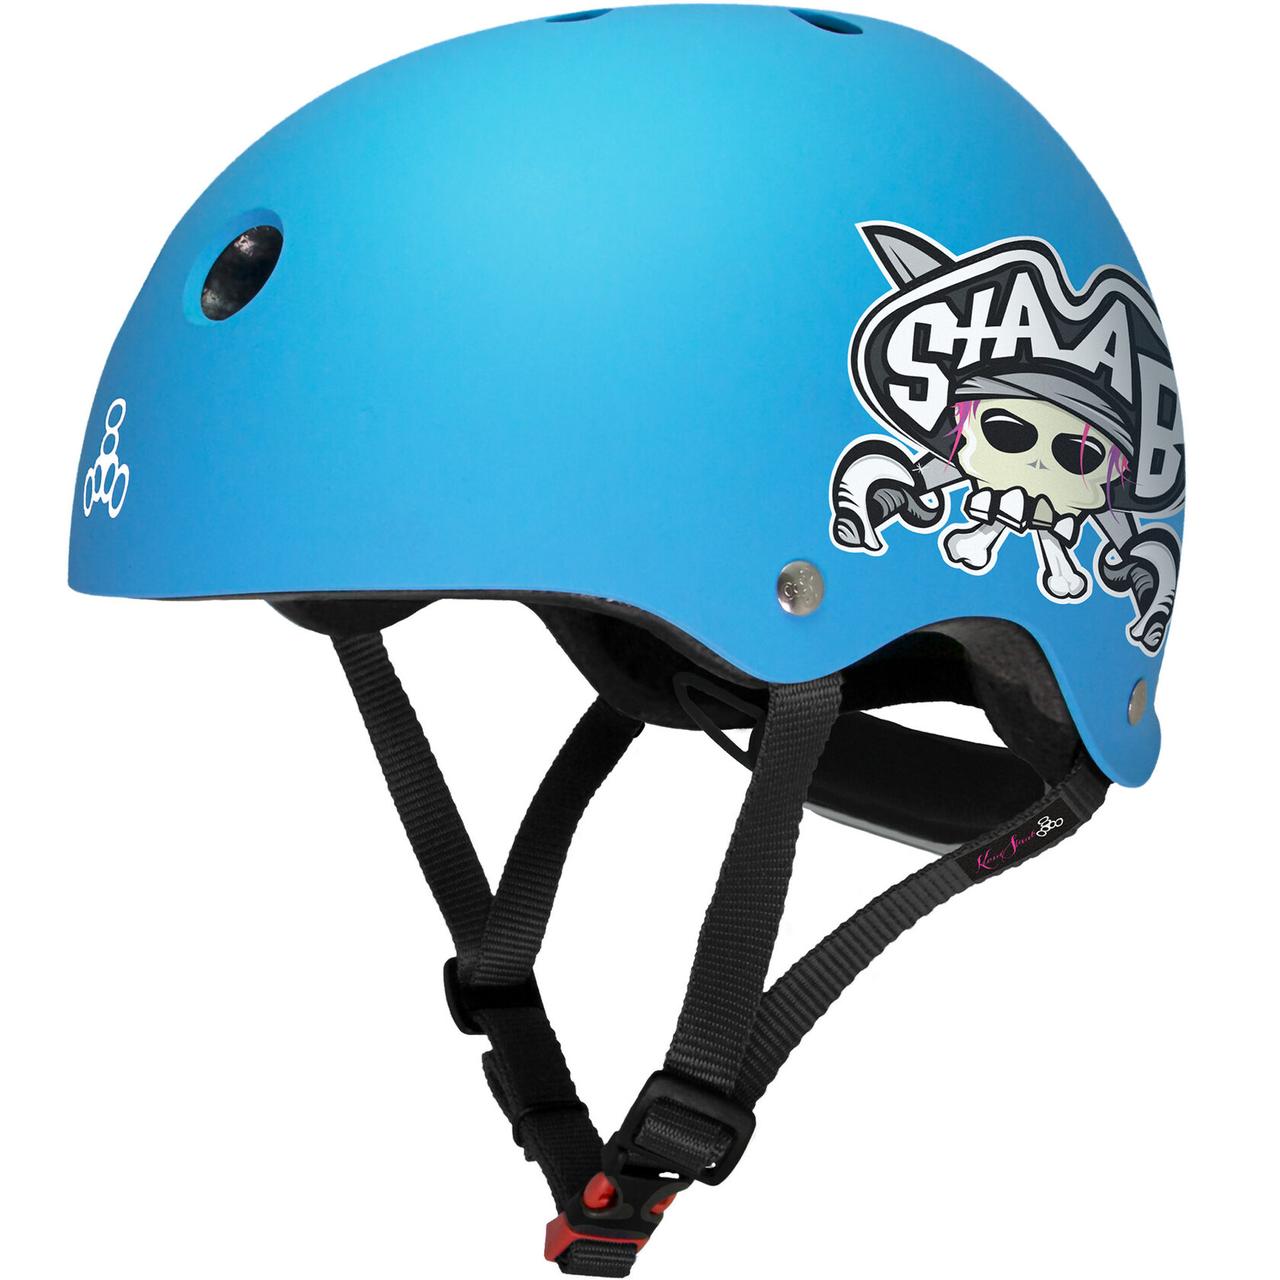 Шлем защитный Triple Eight Lil 8 Staab Neon Blue, 5+, синий шлем зимний sh 18 19 pads jr adj blue